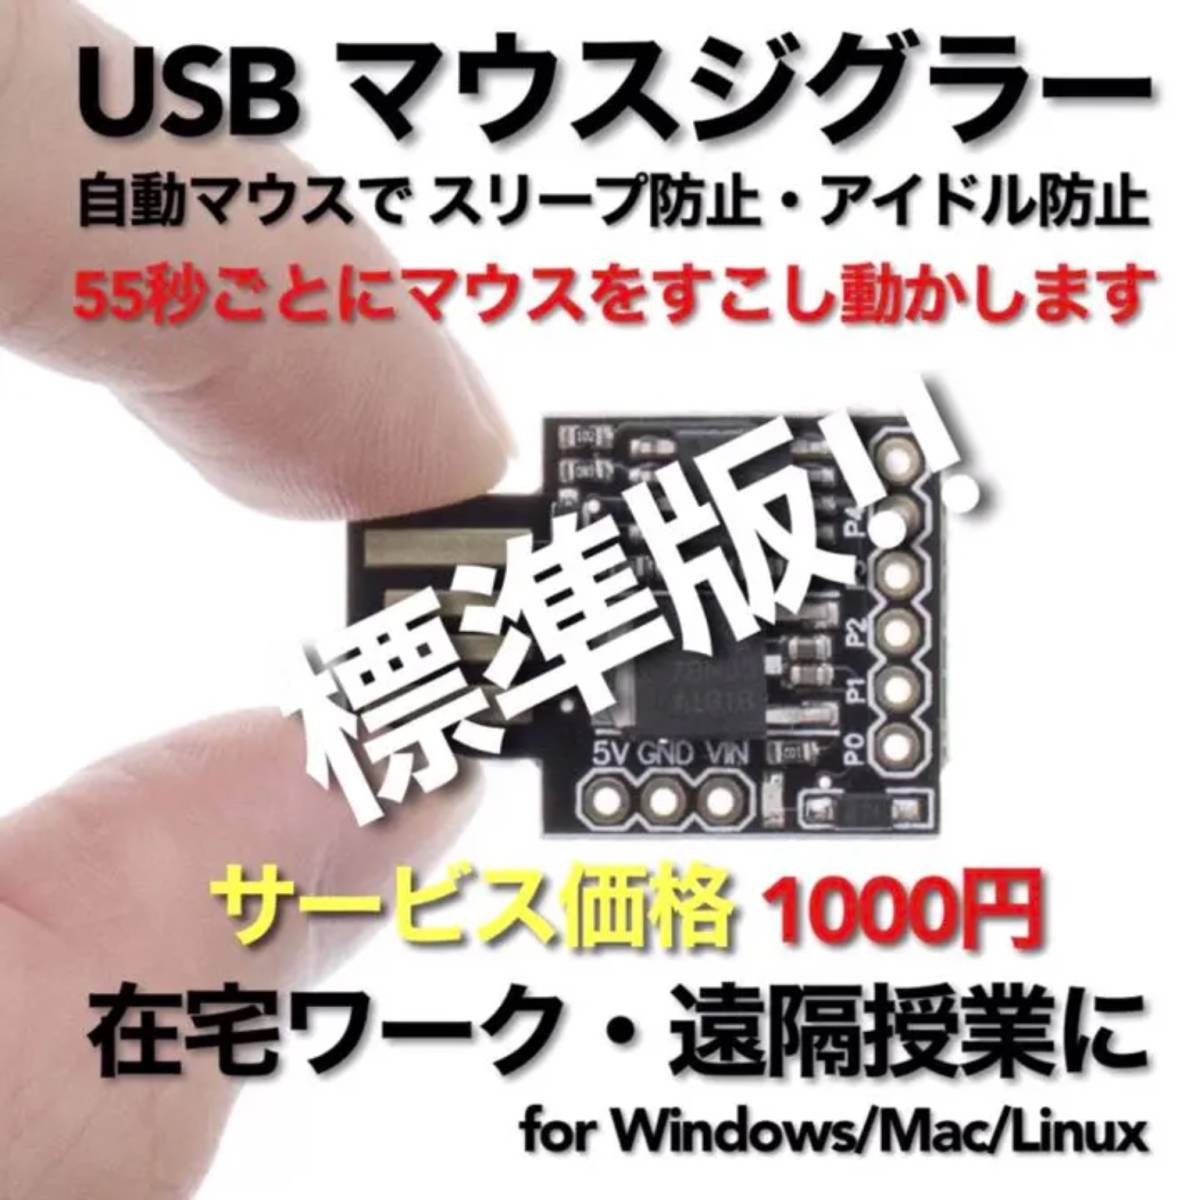 USB マウスジグラー 標準版!! 販売実績No.1 スクリーンセーバーキラー #1 在宅勤務 リモートワーク 遠隔授業 Mouse Jiggler Mover_画像1